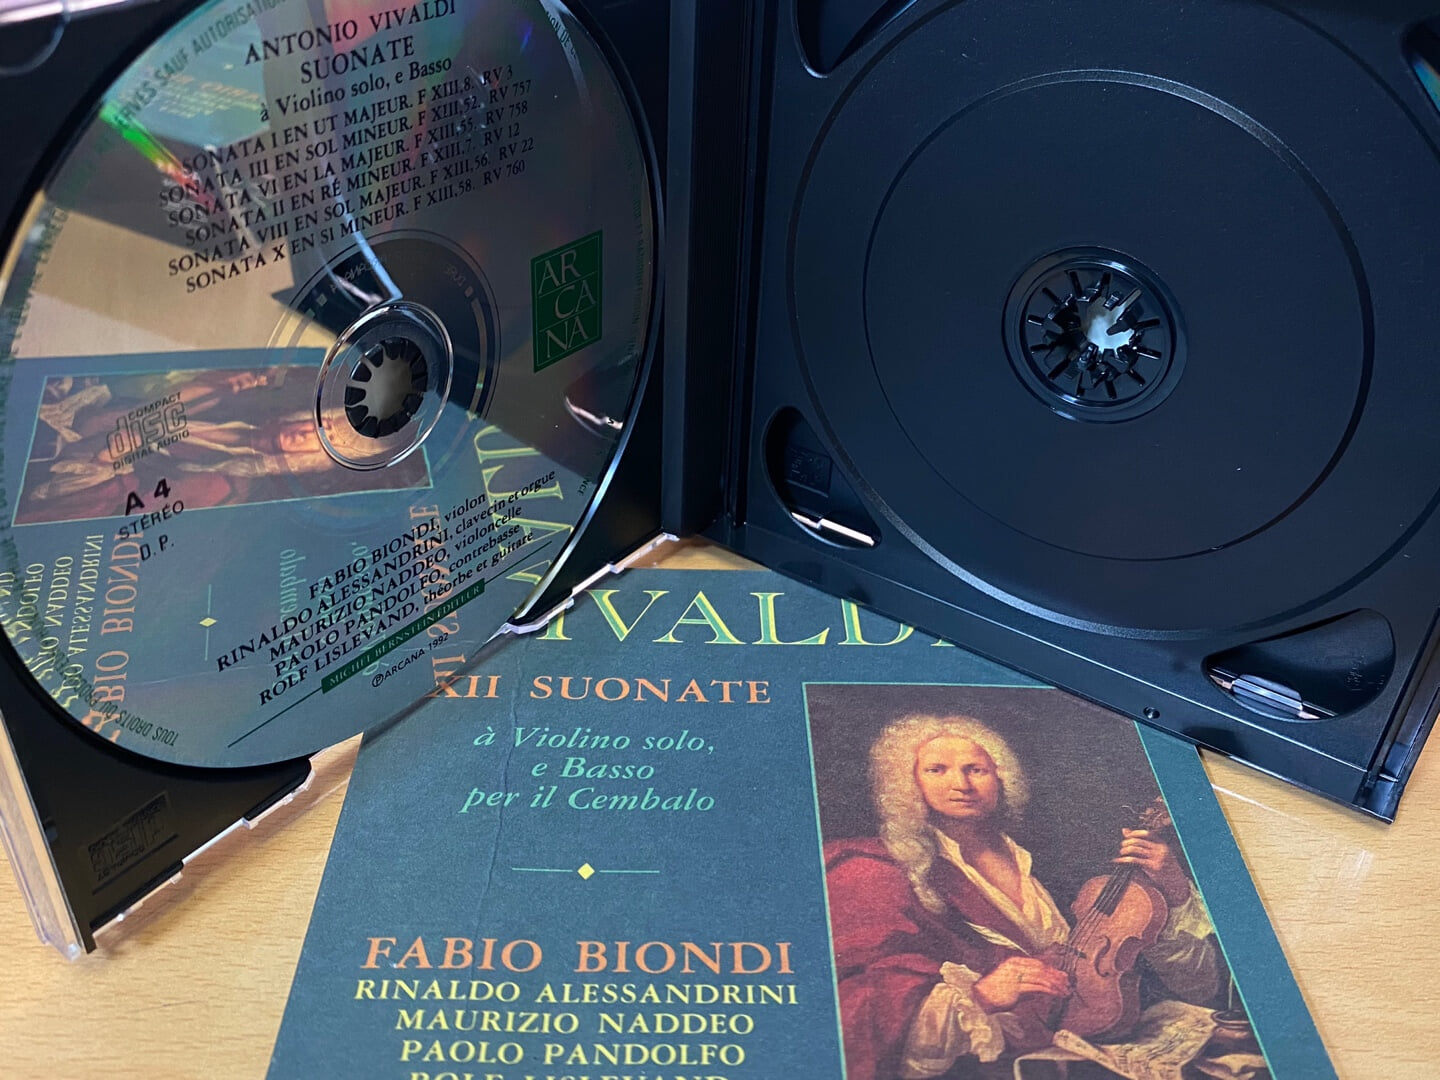 파비오 비온디 - Fabio Biondi - Vivaldi XII Suonate A Violino Solo, E Basso Per Il Cembalo 2Cds [E.U발매]